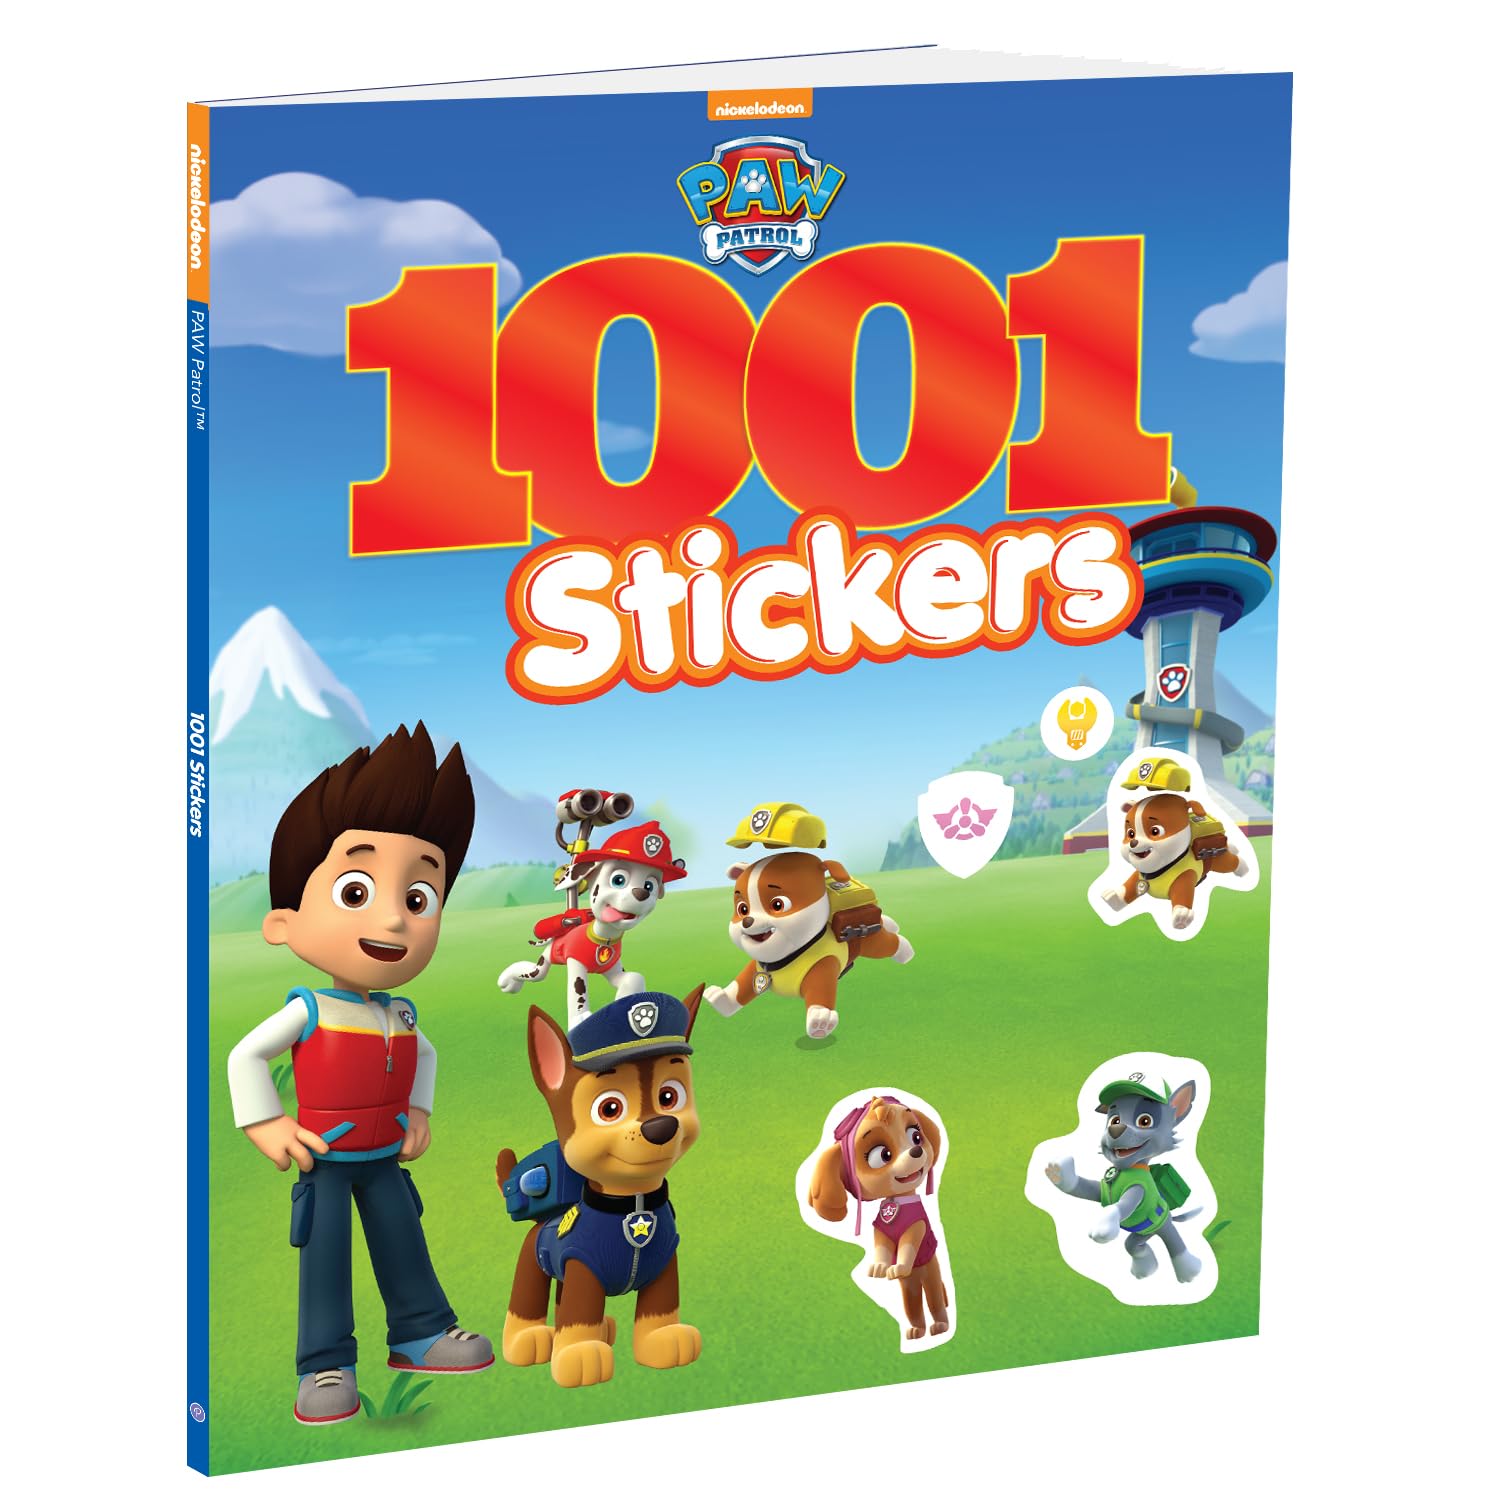 Paw Patrol 1001 Sticker